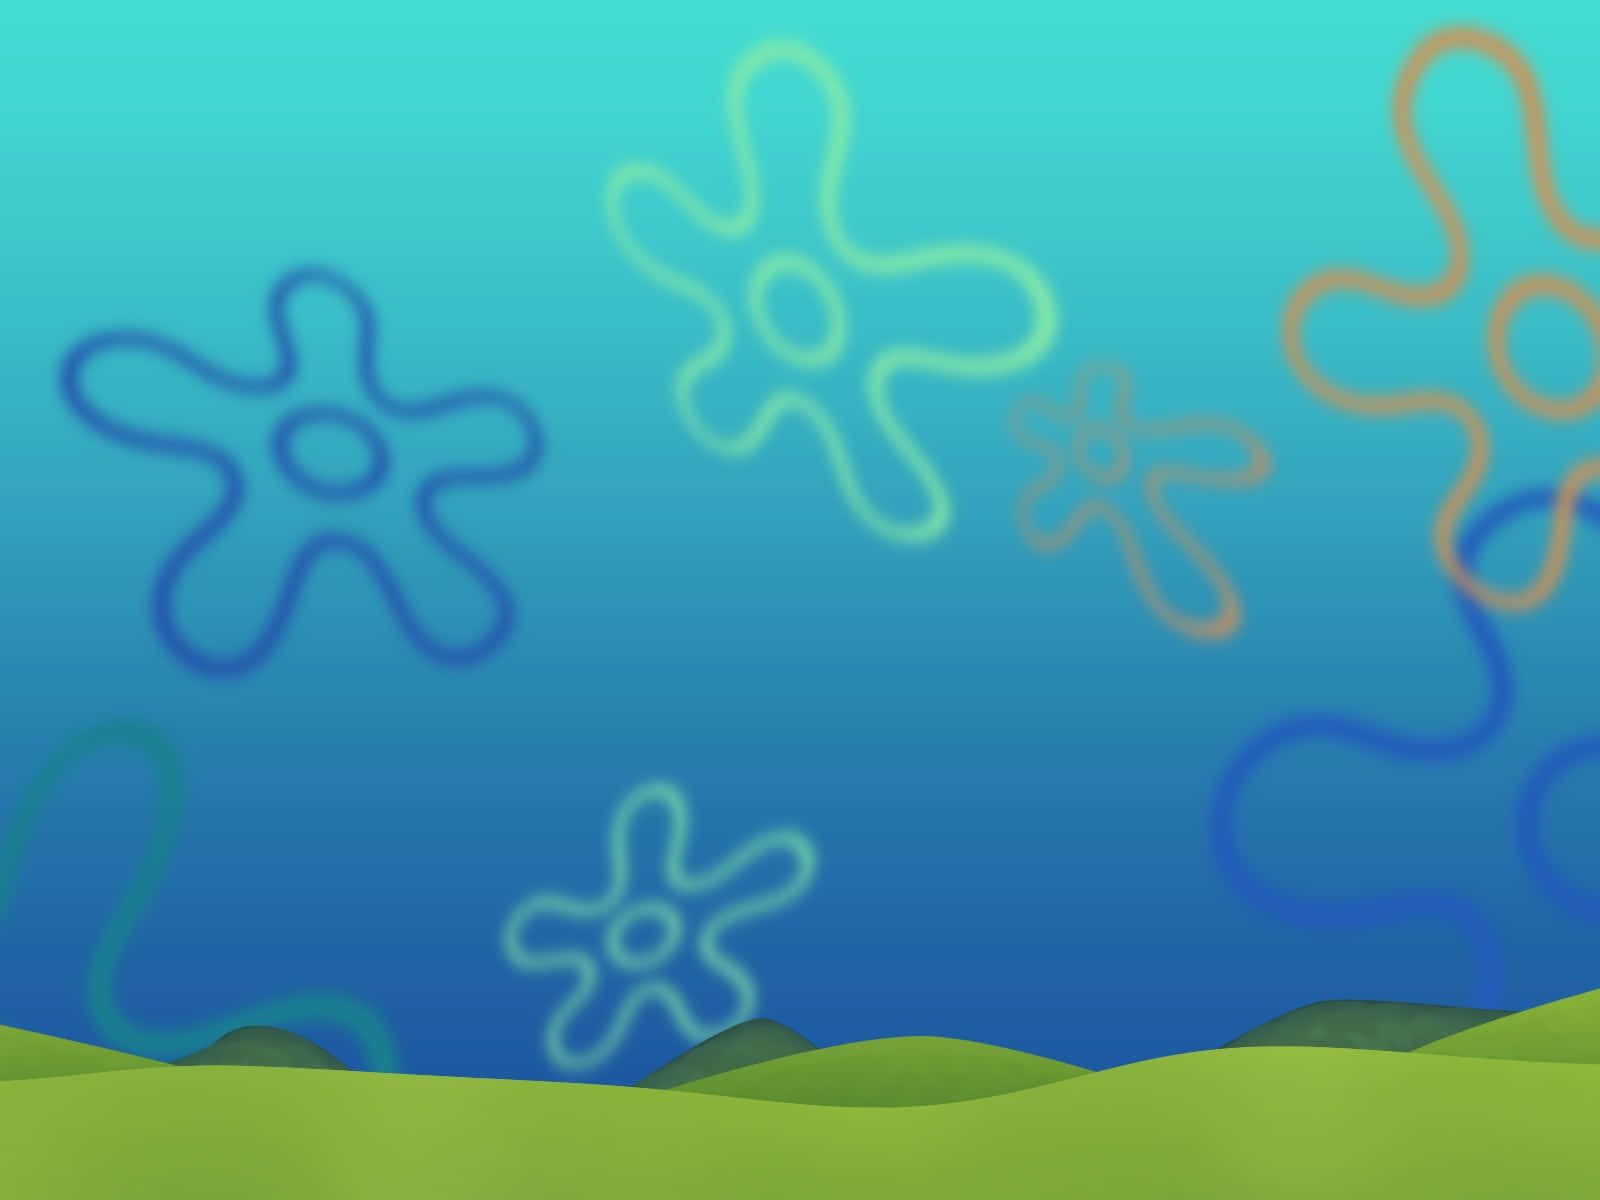 Spongebob Squarepants - Screenshot Thumbnail Wallpaper